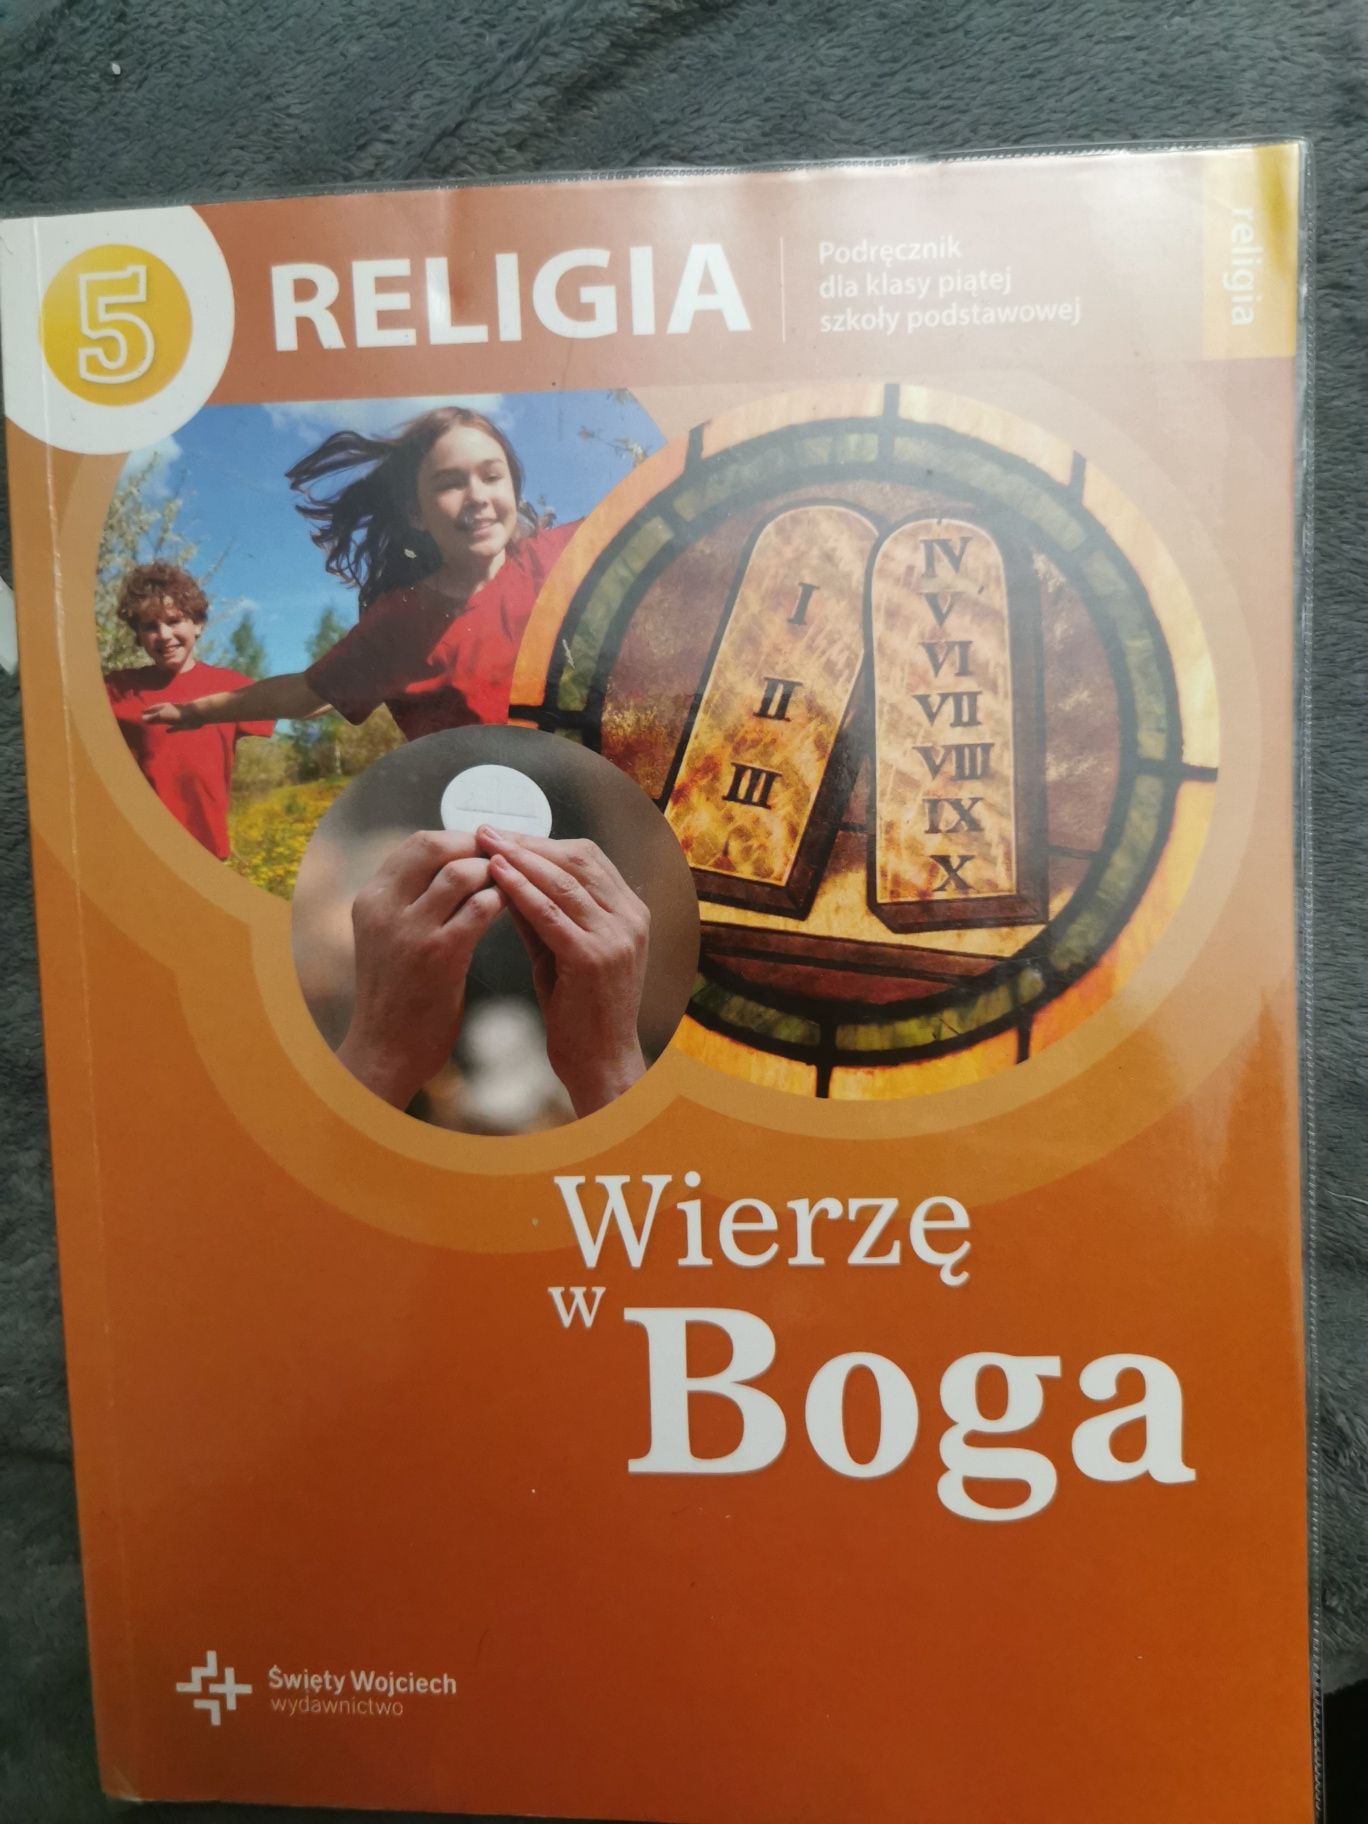 Wierzę w Boga, podręcznik do religii klasa 5,Wydawnictwo Św. Wojciech